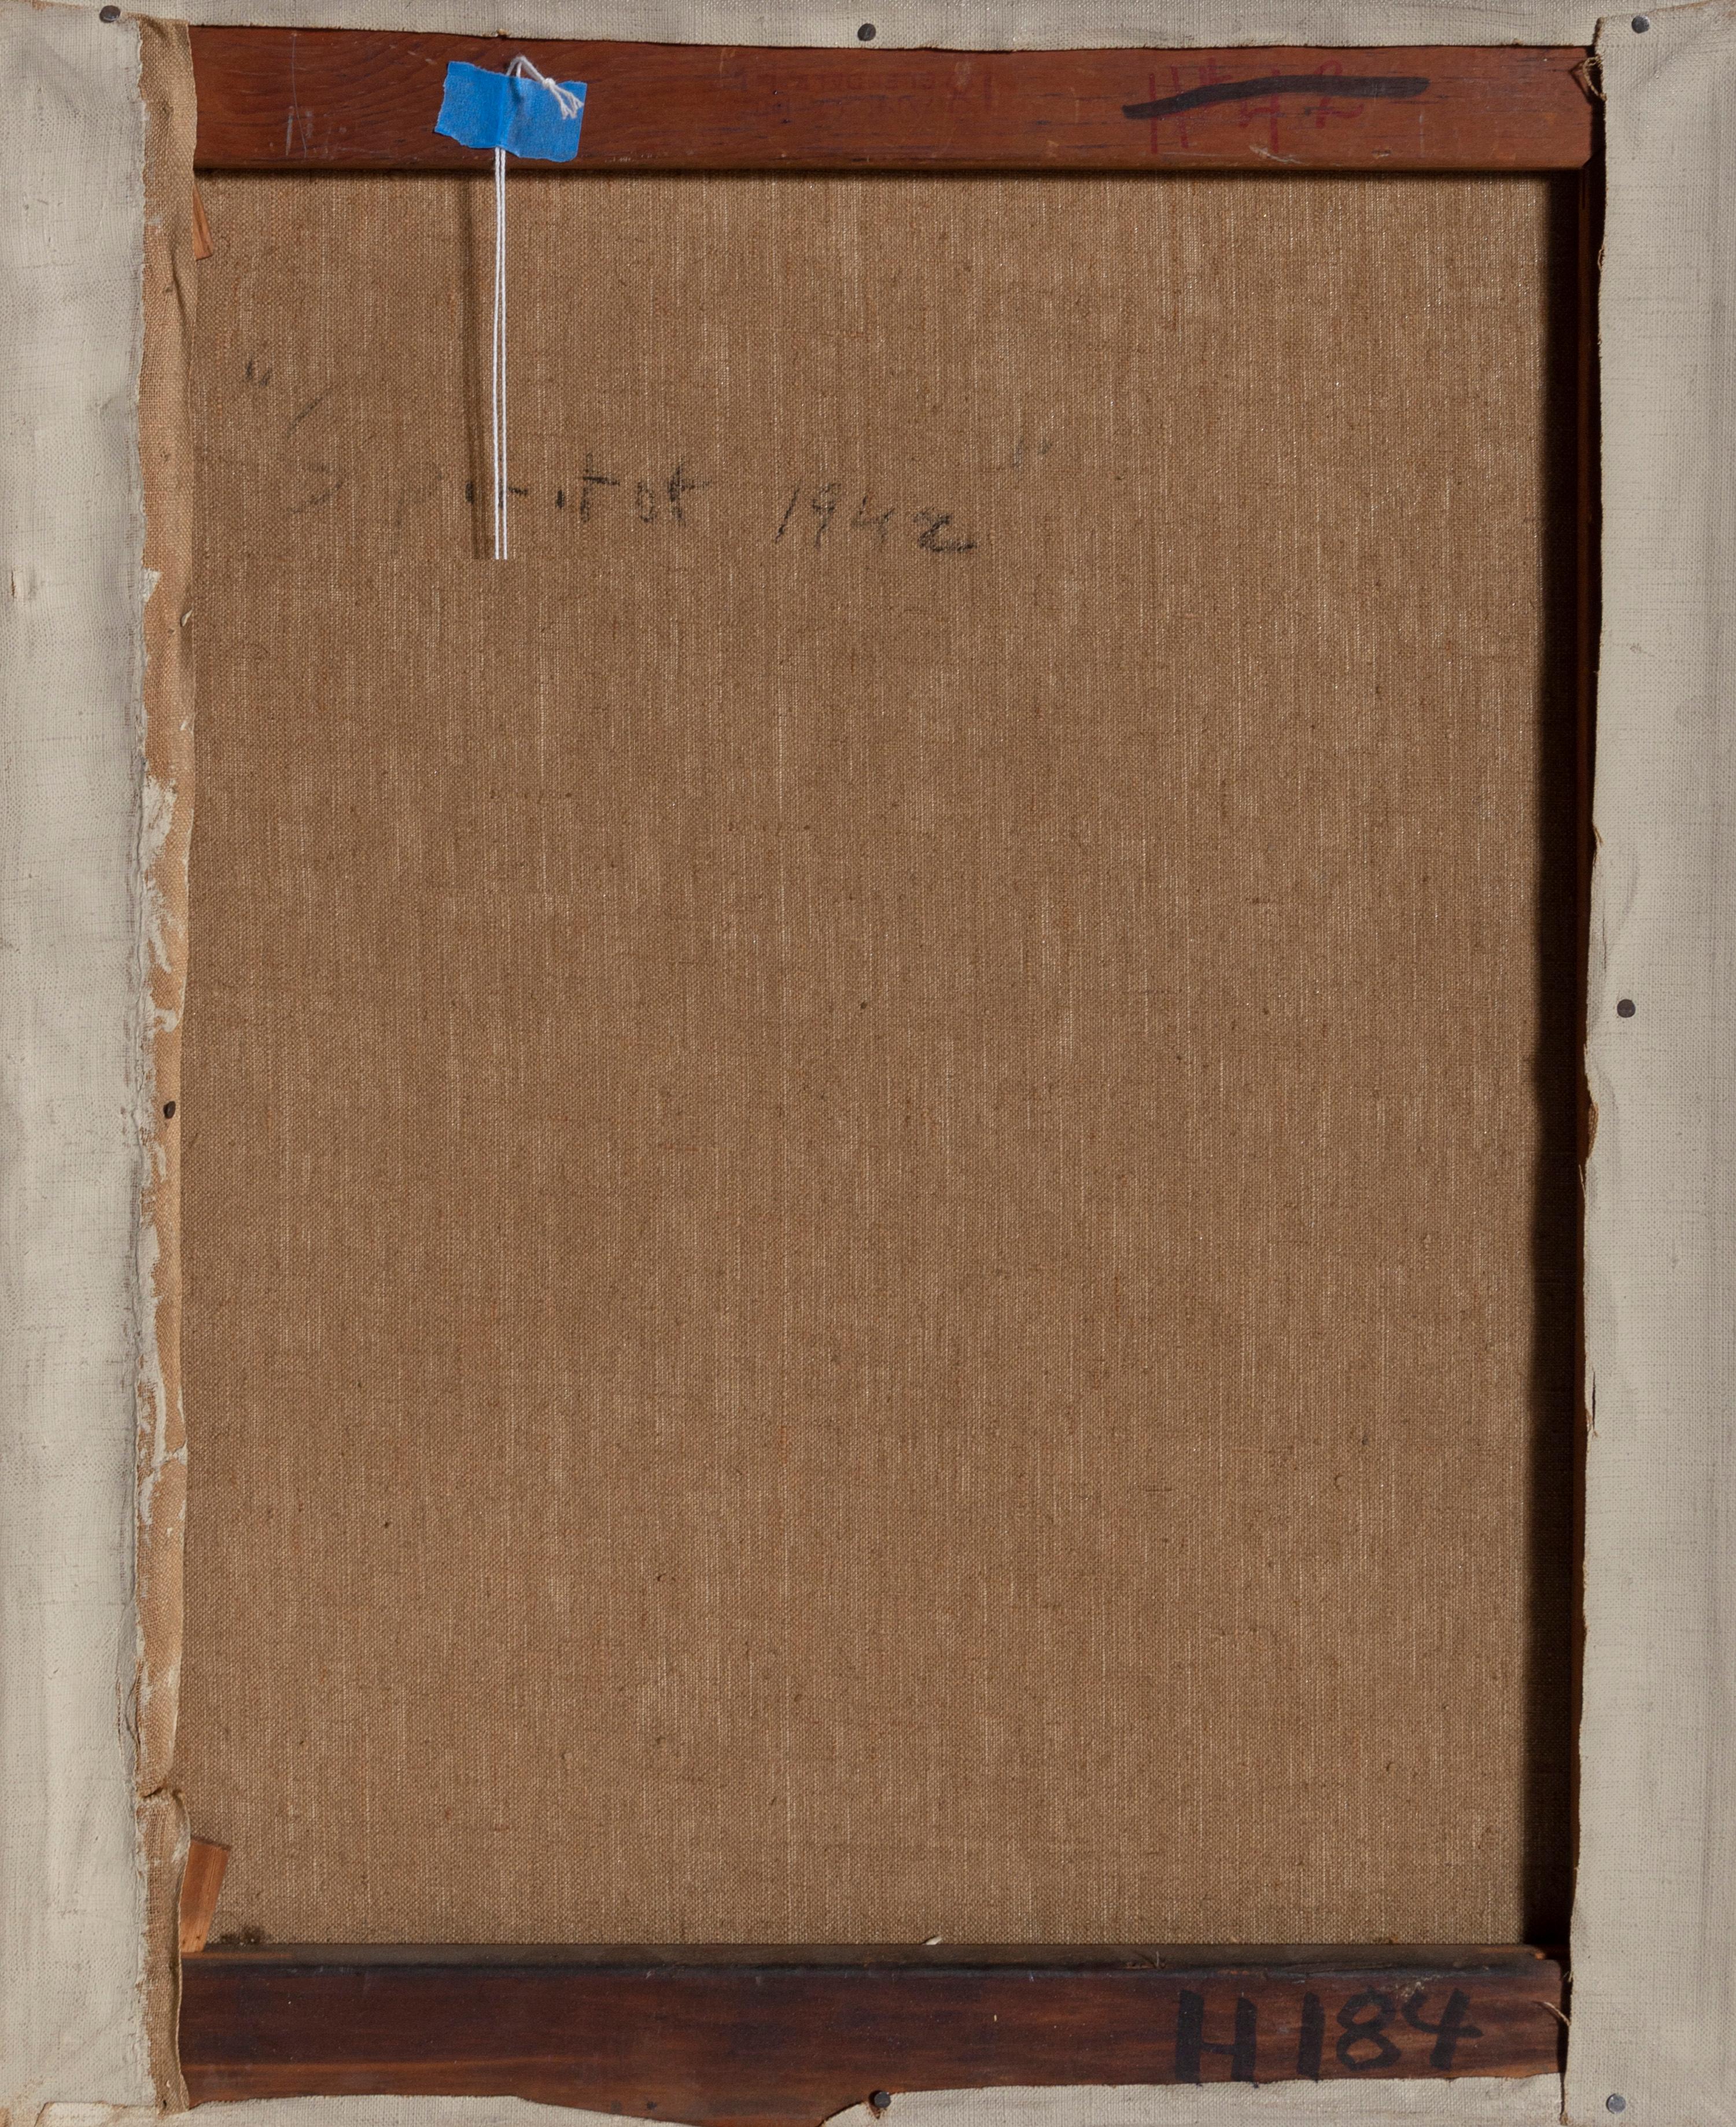 Une peinture à l'huile originale sur toile de Benjamin Benno, américain (1901 - 1980) mesurant 22 x 18 pouces, titrée au verso.  Au début des années 1930, Benno s'est forgé une réputation de membre de l'avant-garde internationale et a exposé avec